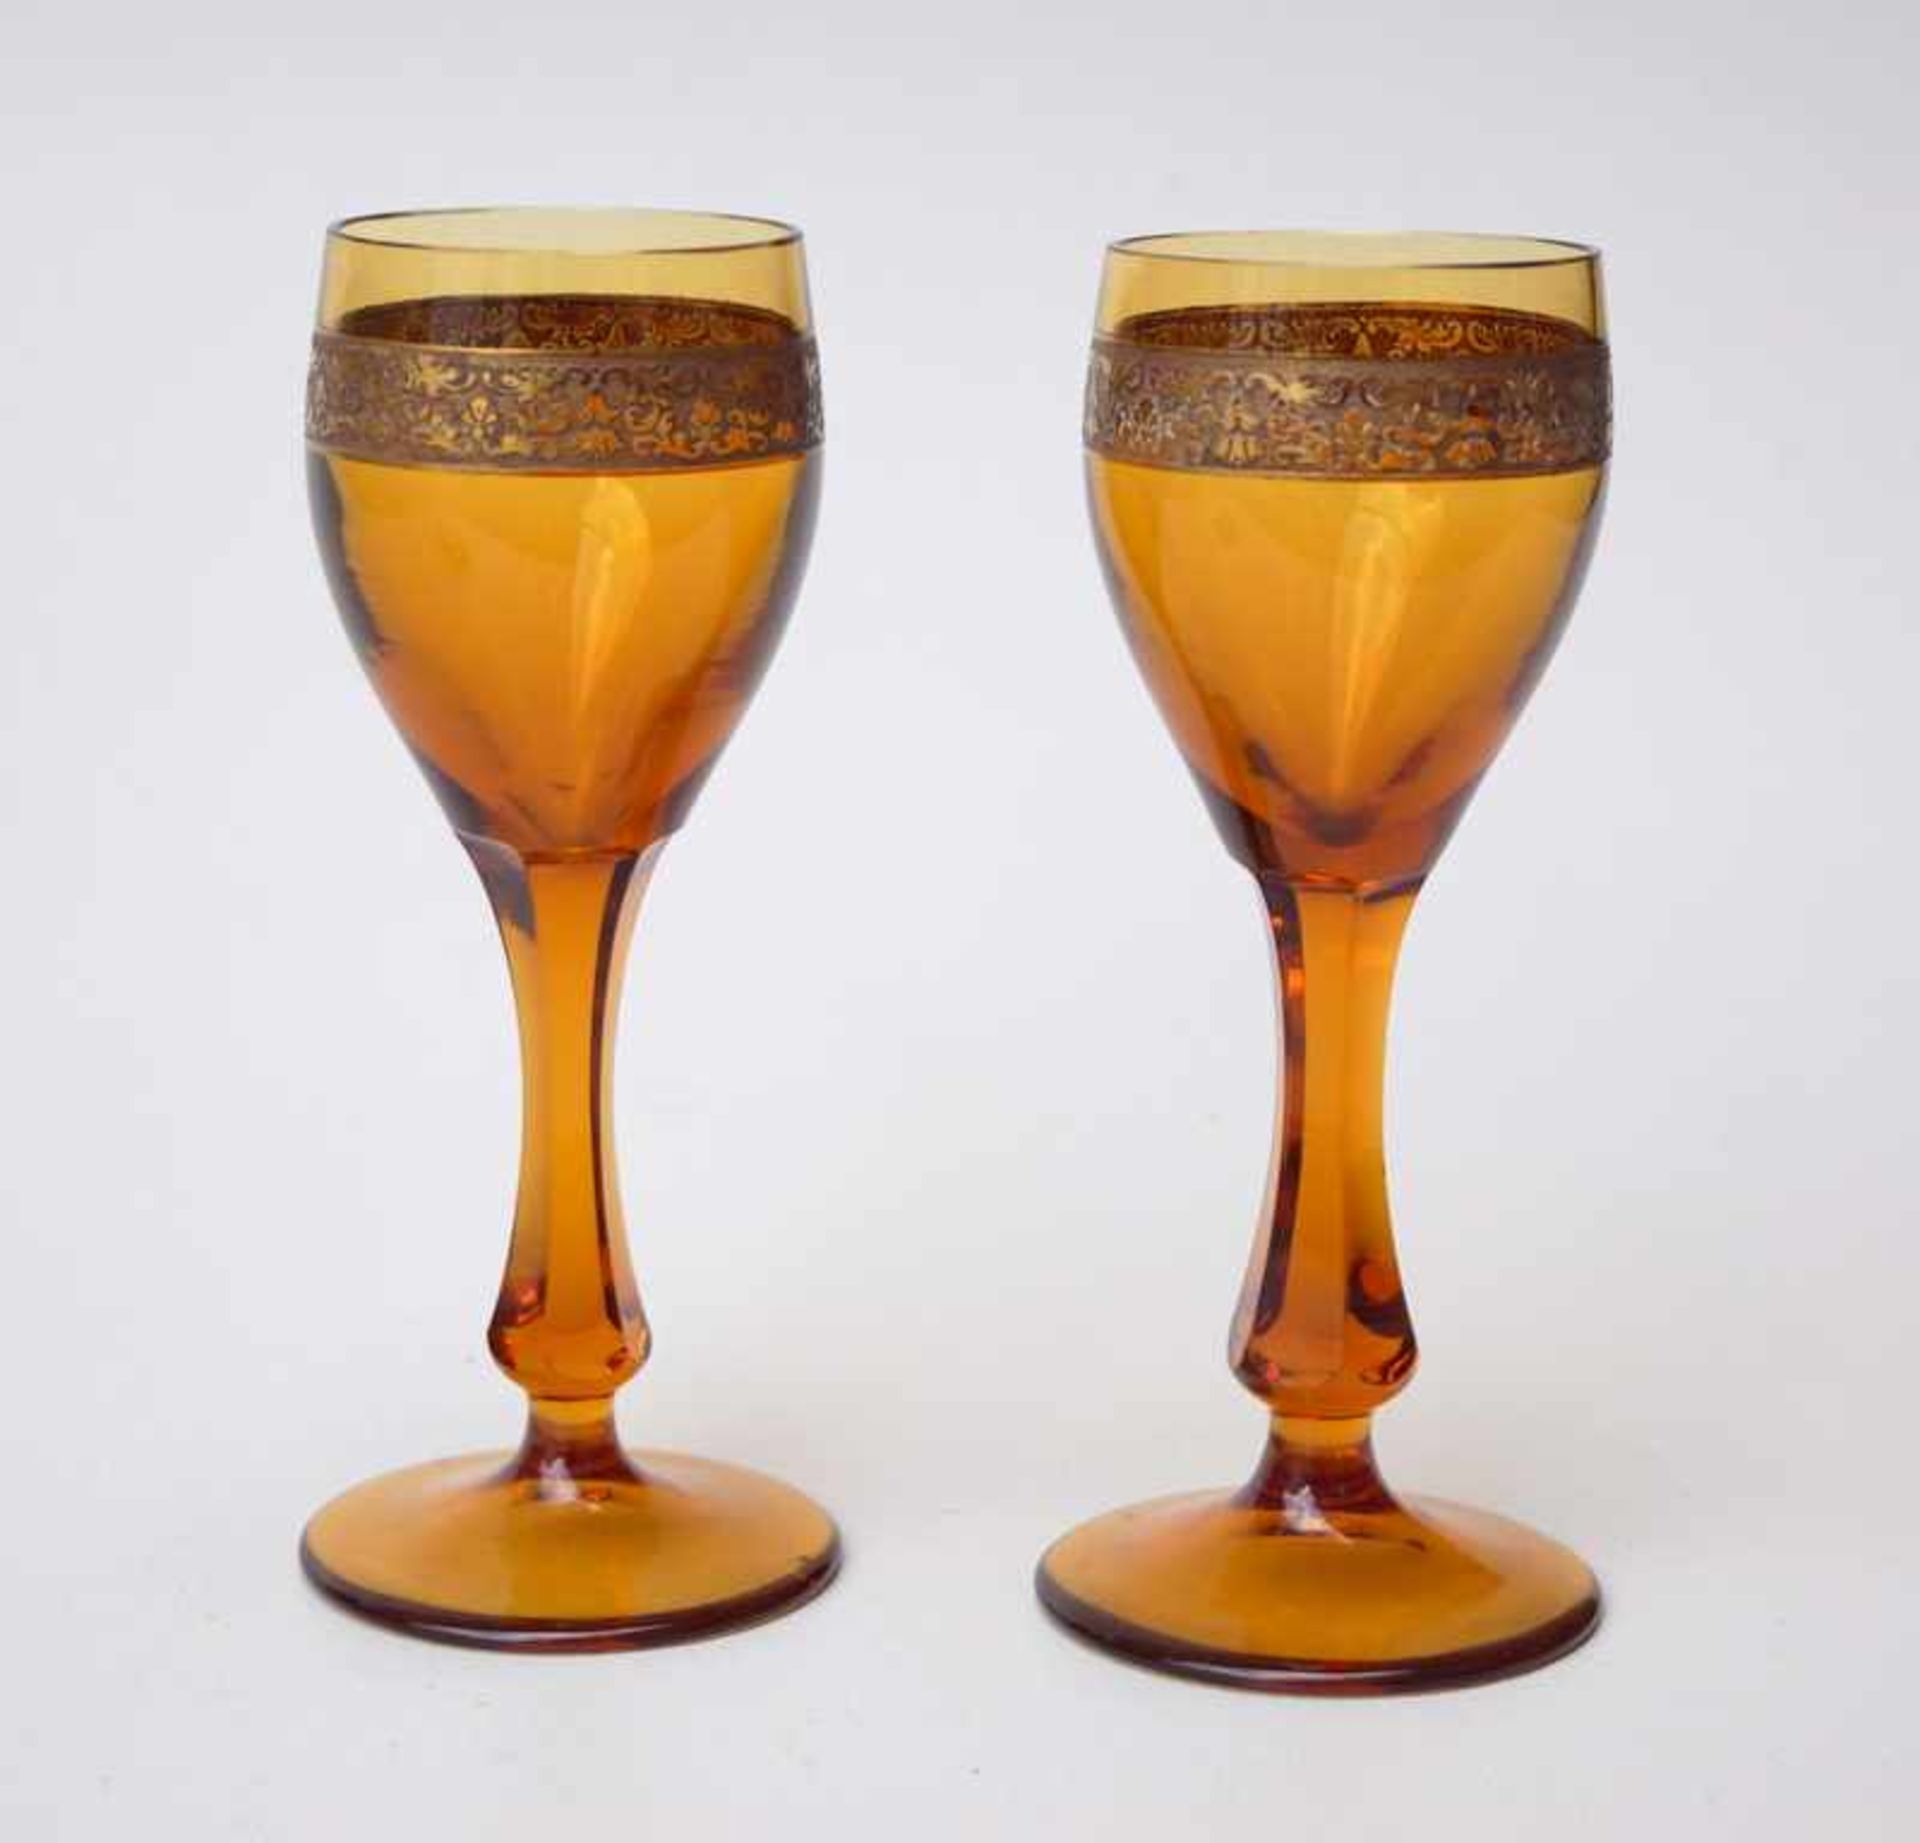 Pärchen Weinpokalebernsteinfarbendes Glas, umlaufendes Ätzrelief vergoldet, unsigniert, wohl